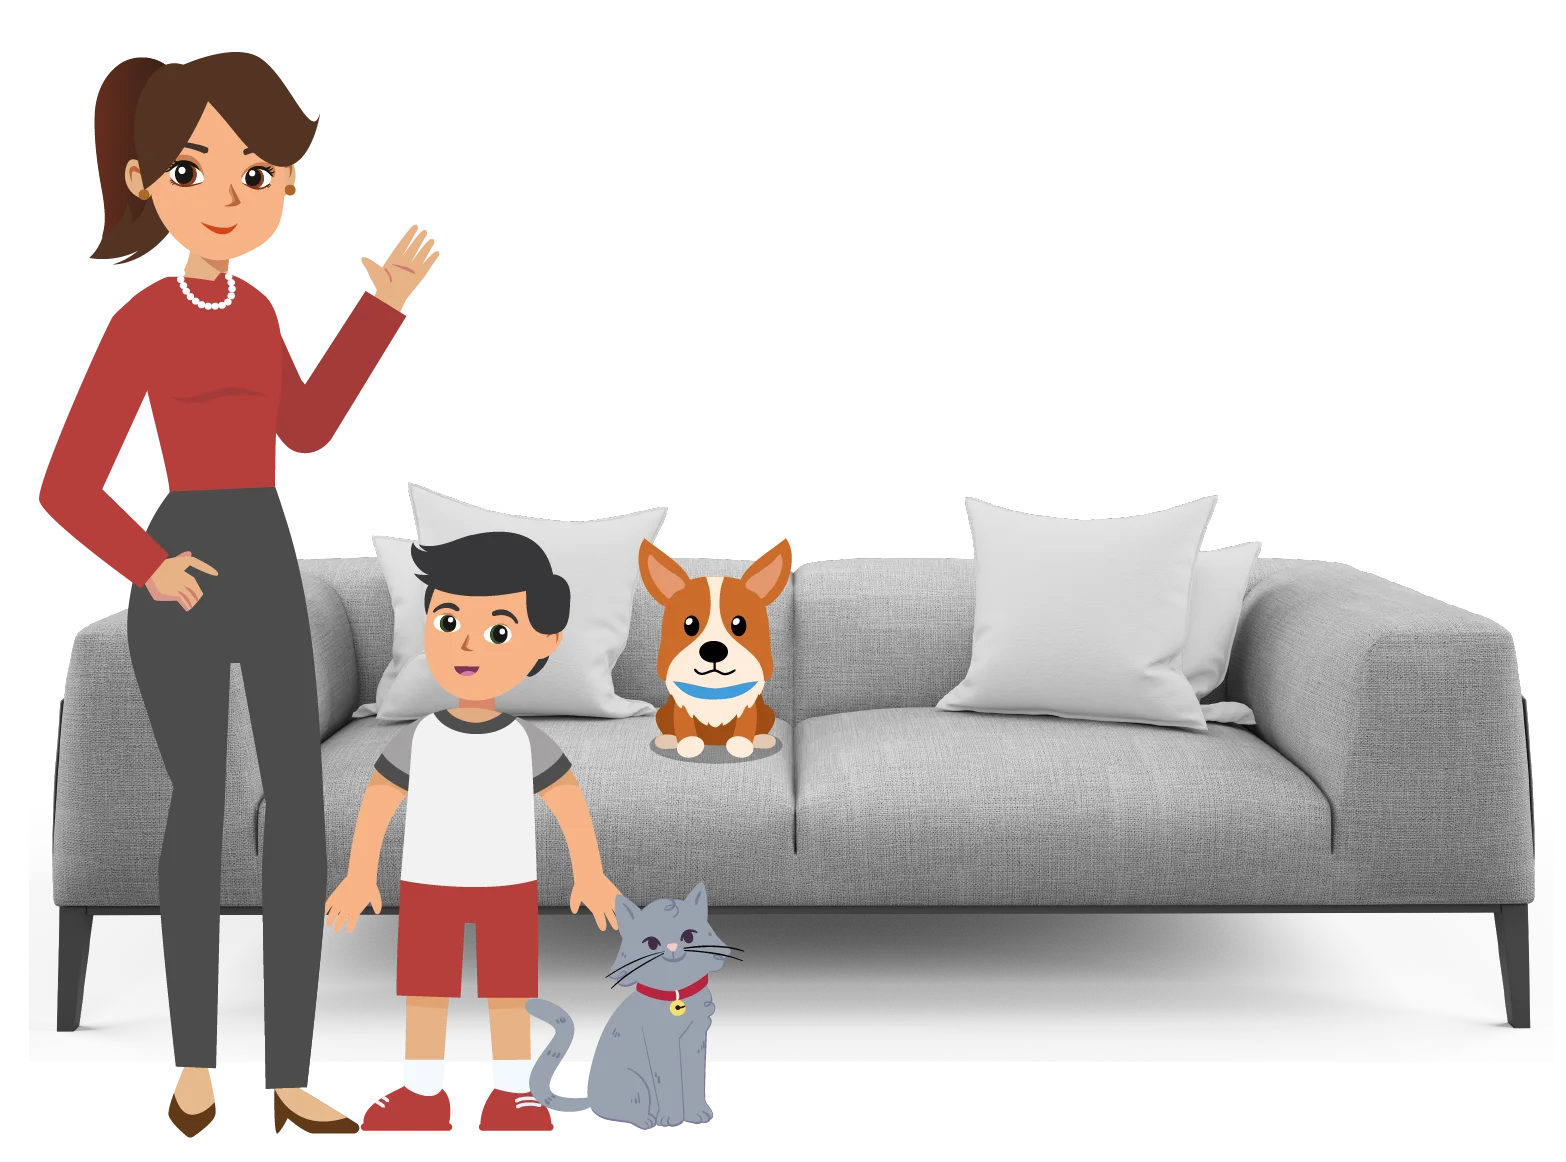 Iconos de mama e hijo con sus mascotas y de fondo un sofá.